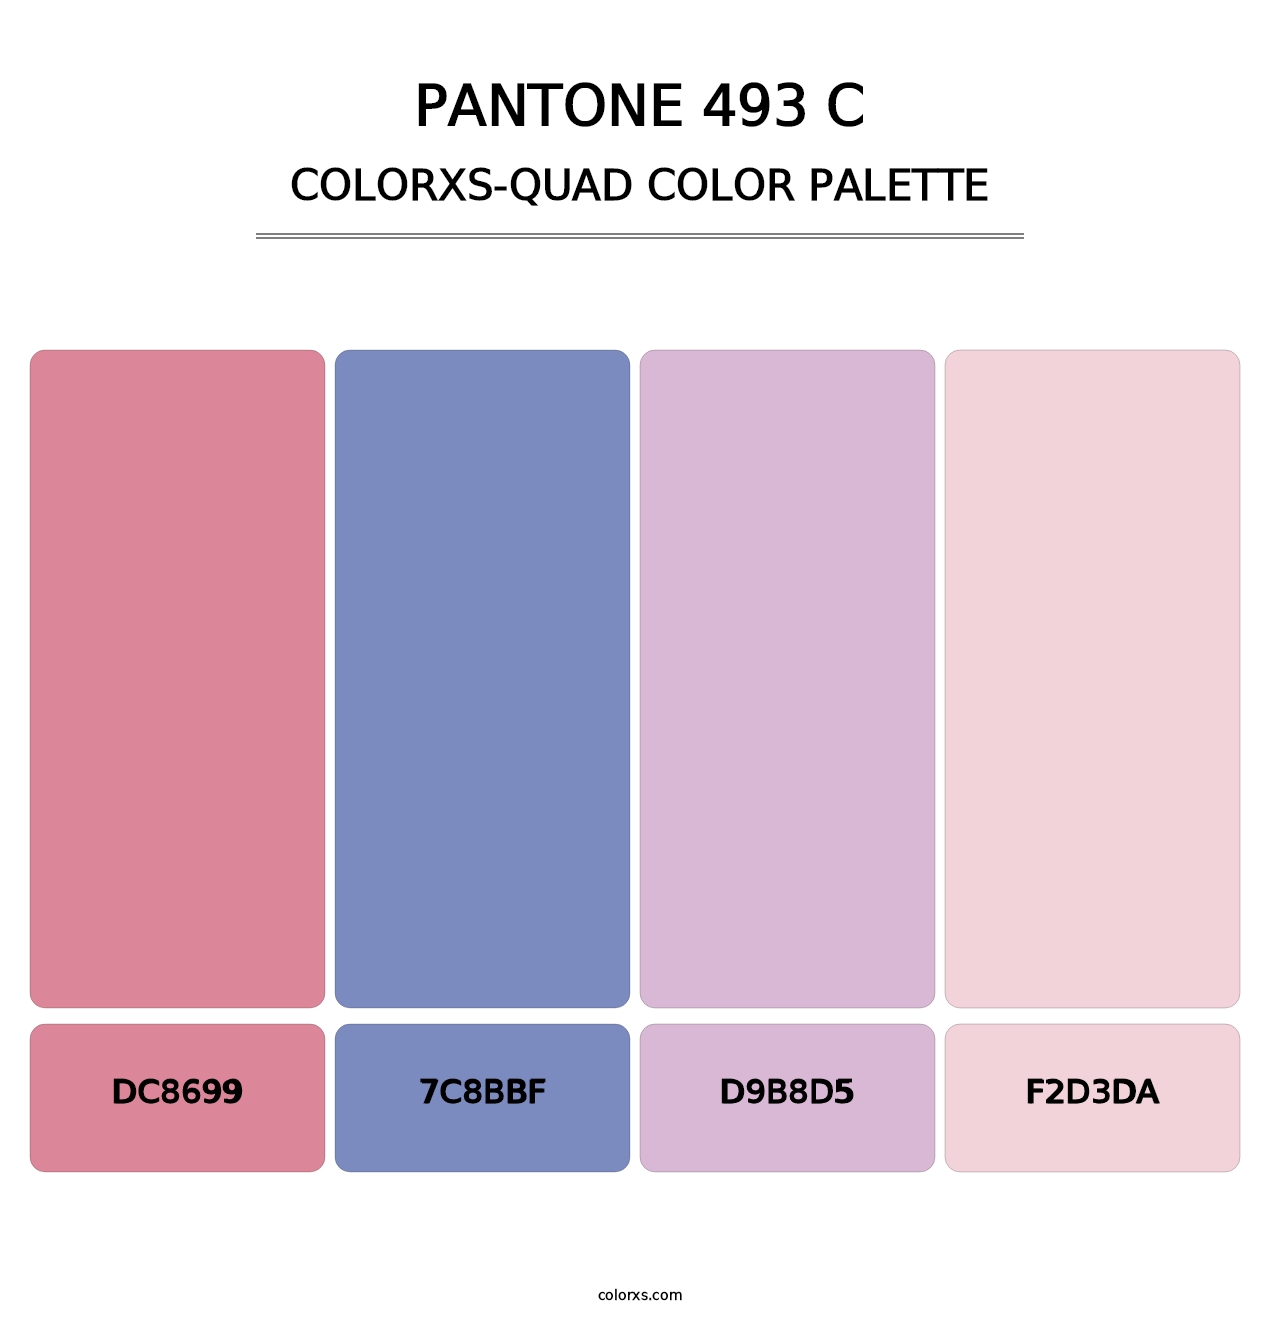 PANTONE 493 C - Colorxs Quad Palette